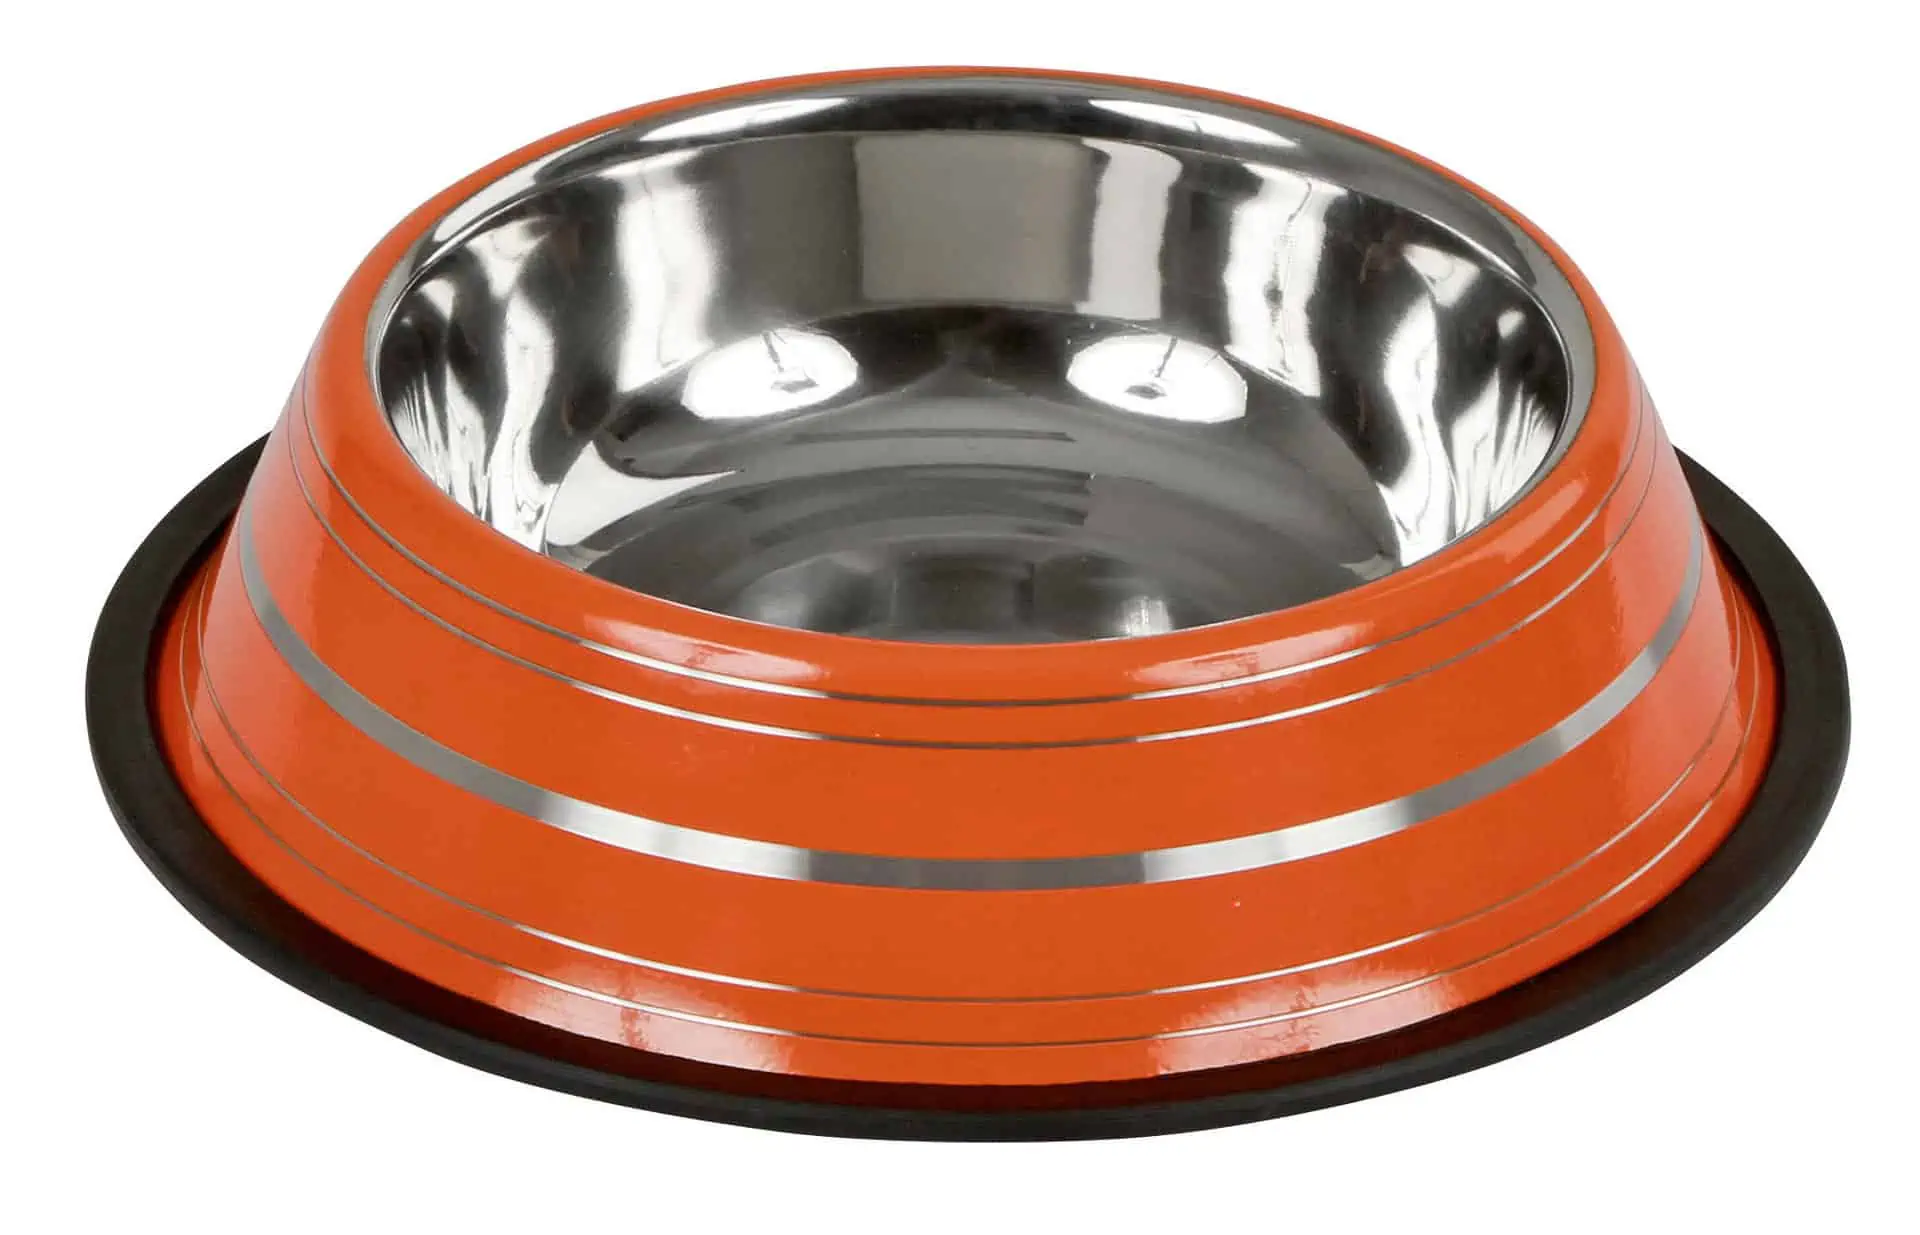 Halkfri skål i rostfritt stål, olika färger